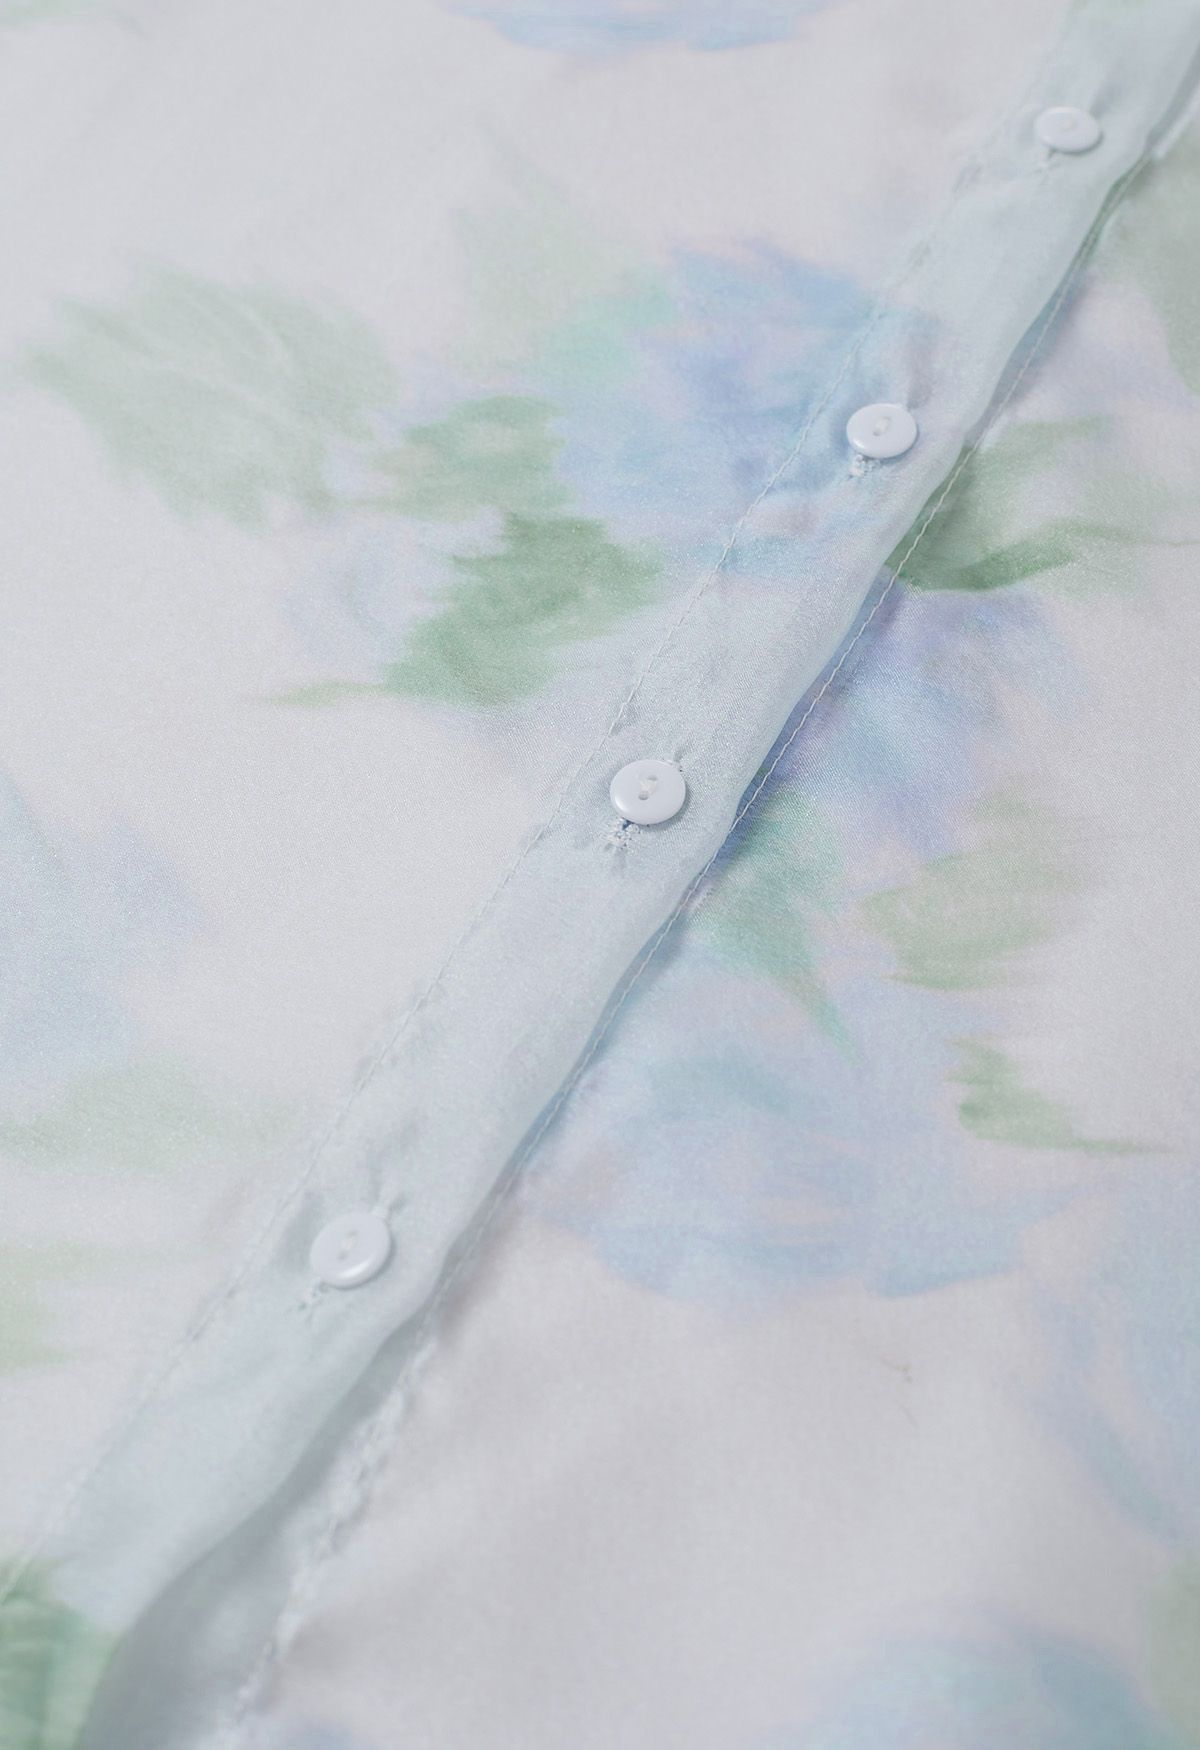 Chemise transparente à nœud floral et aquarelle passionnante en bleu